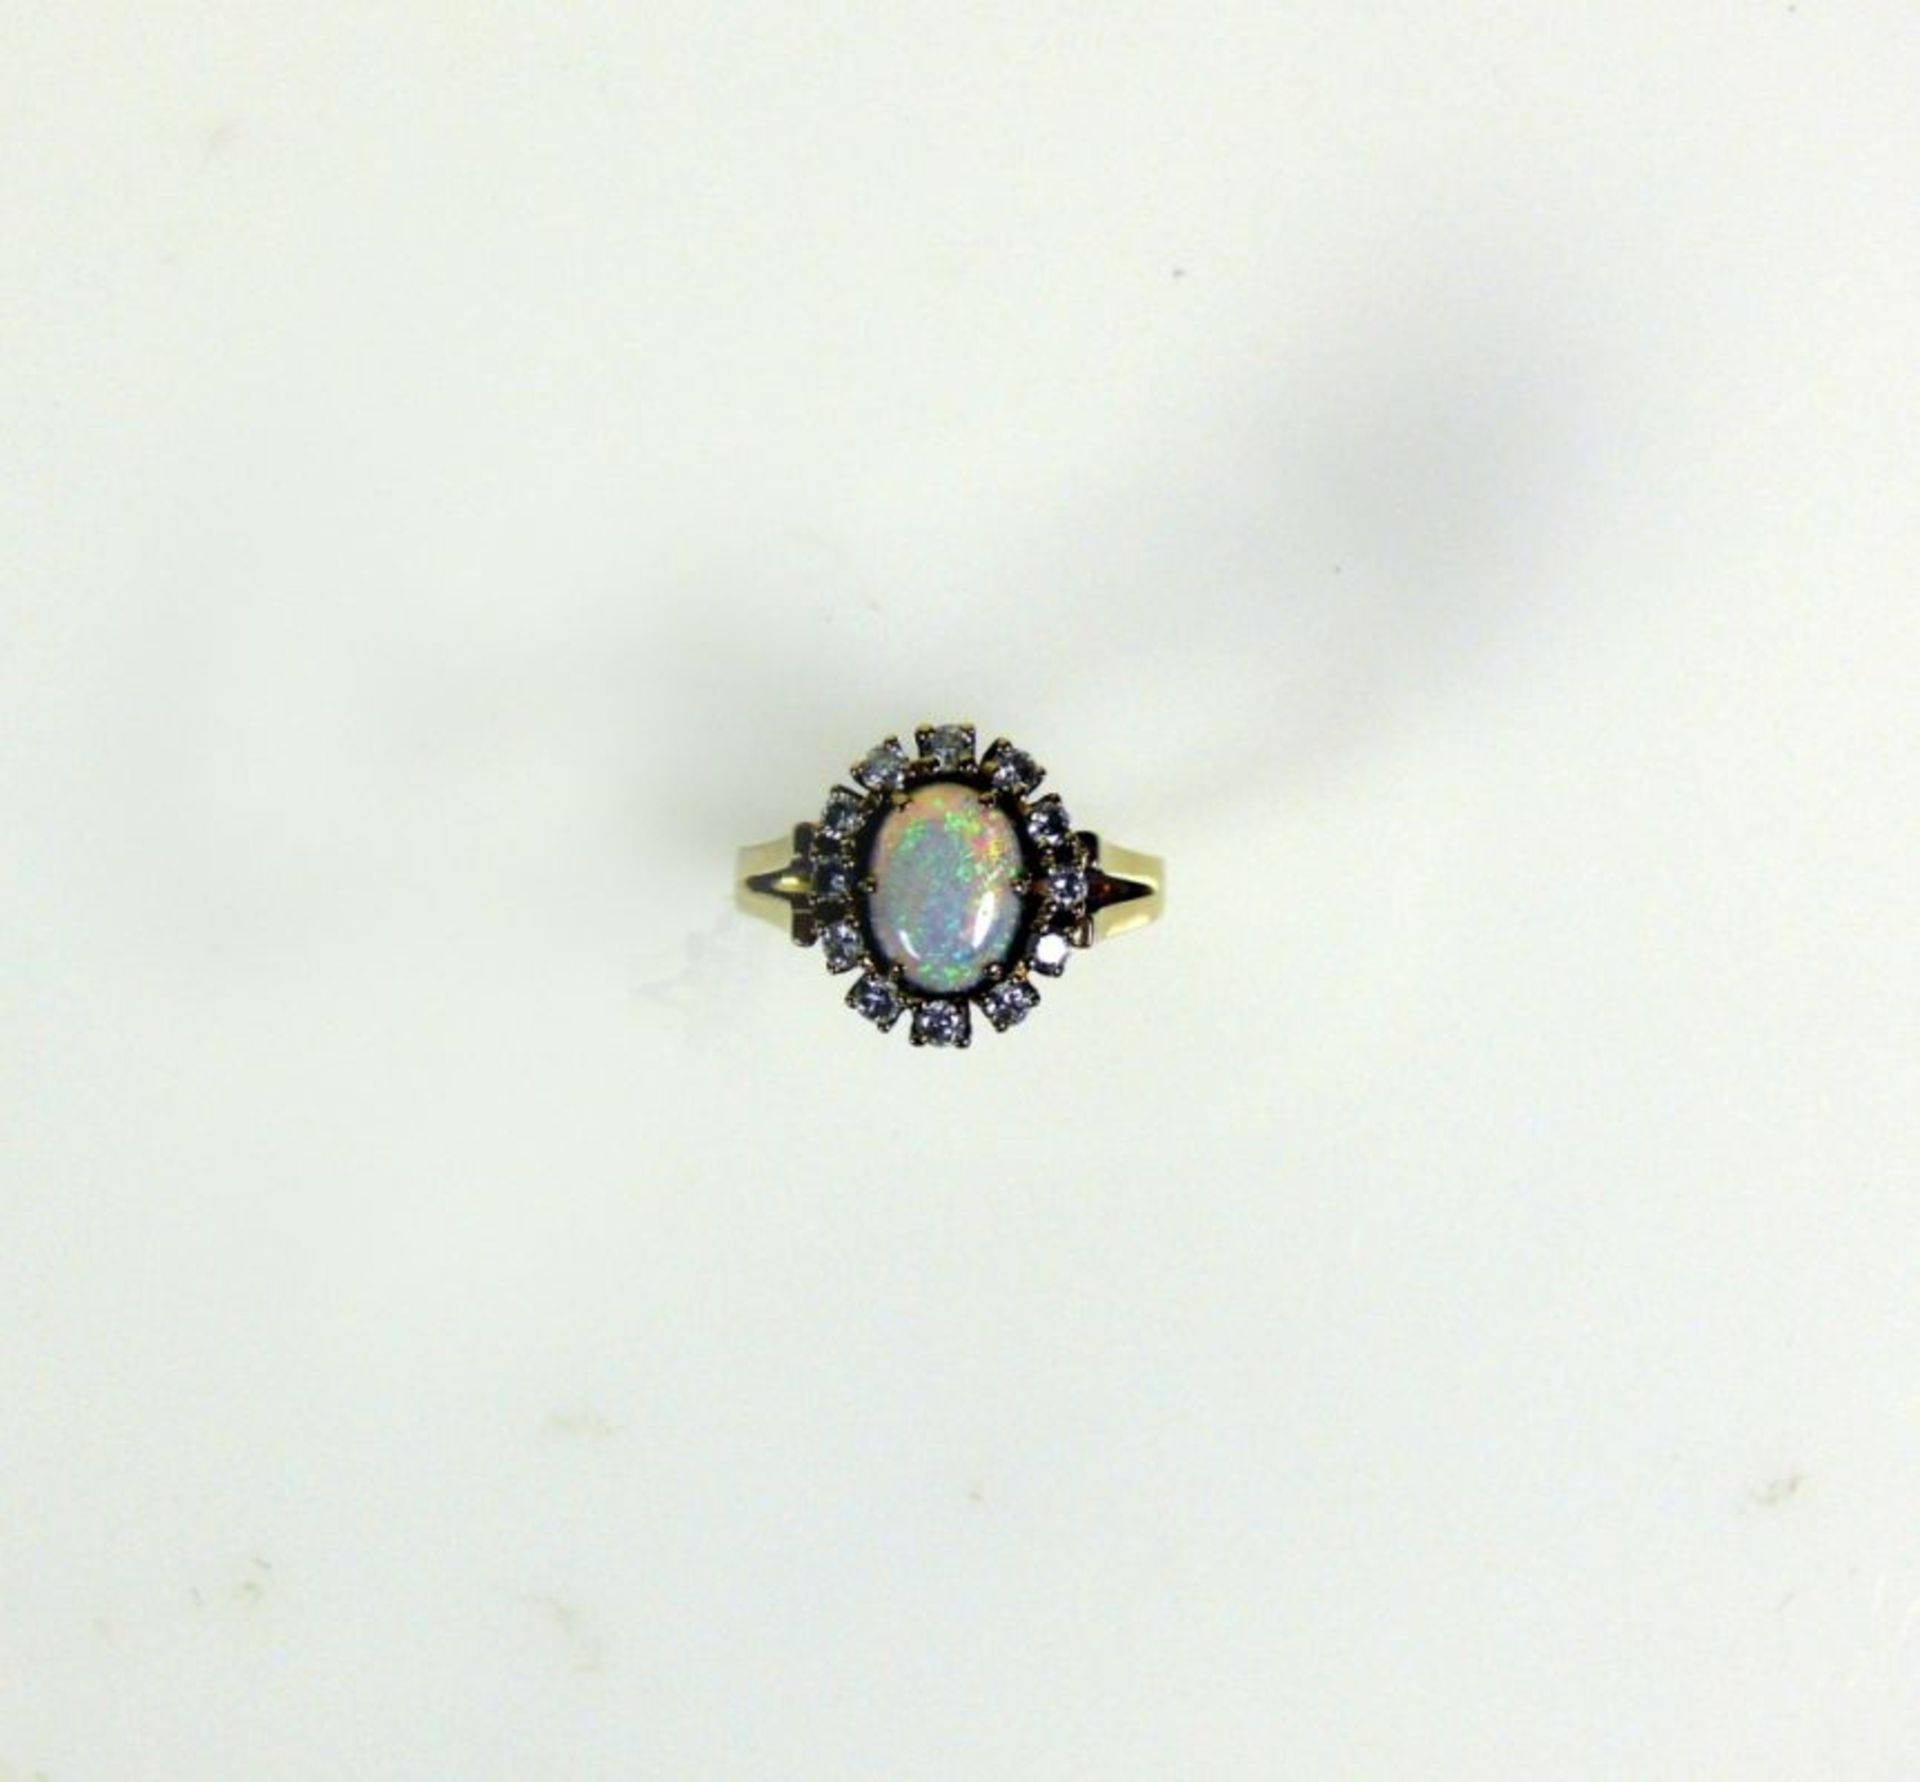 Damenring14ct GG; besetzt mit ovalförmigem Opal-Cabochon; umrahmt von 12 kleinen Brillanten zus. ca. - Bild 2 aus 3